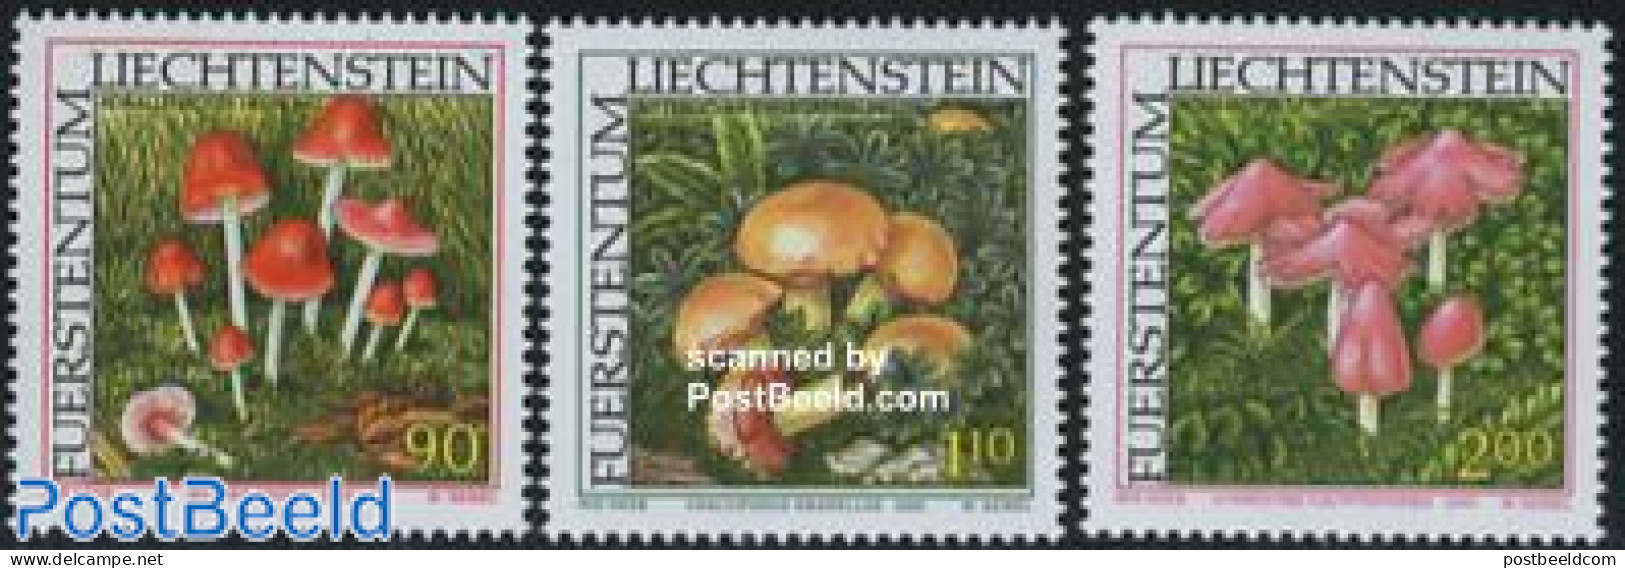 Liechtenstein 2000 Mushrooms 3v, Mint NH, Nature - Mushrooms - Neufs